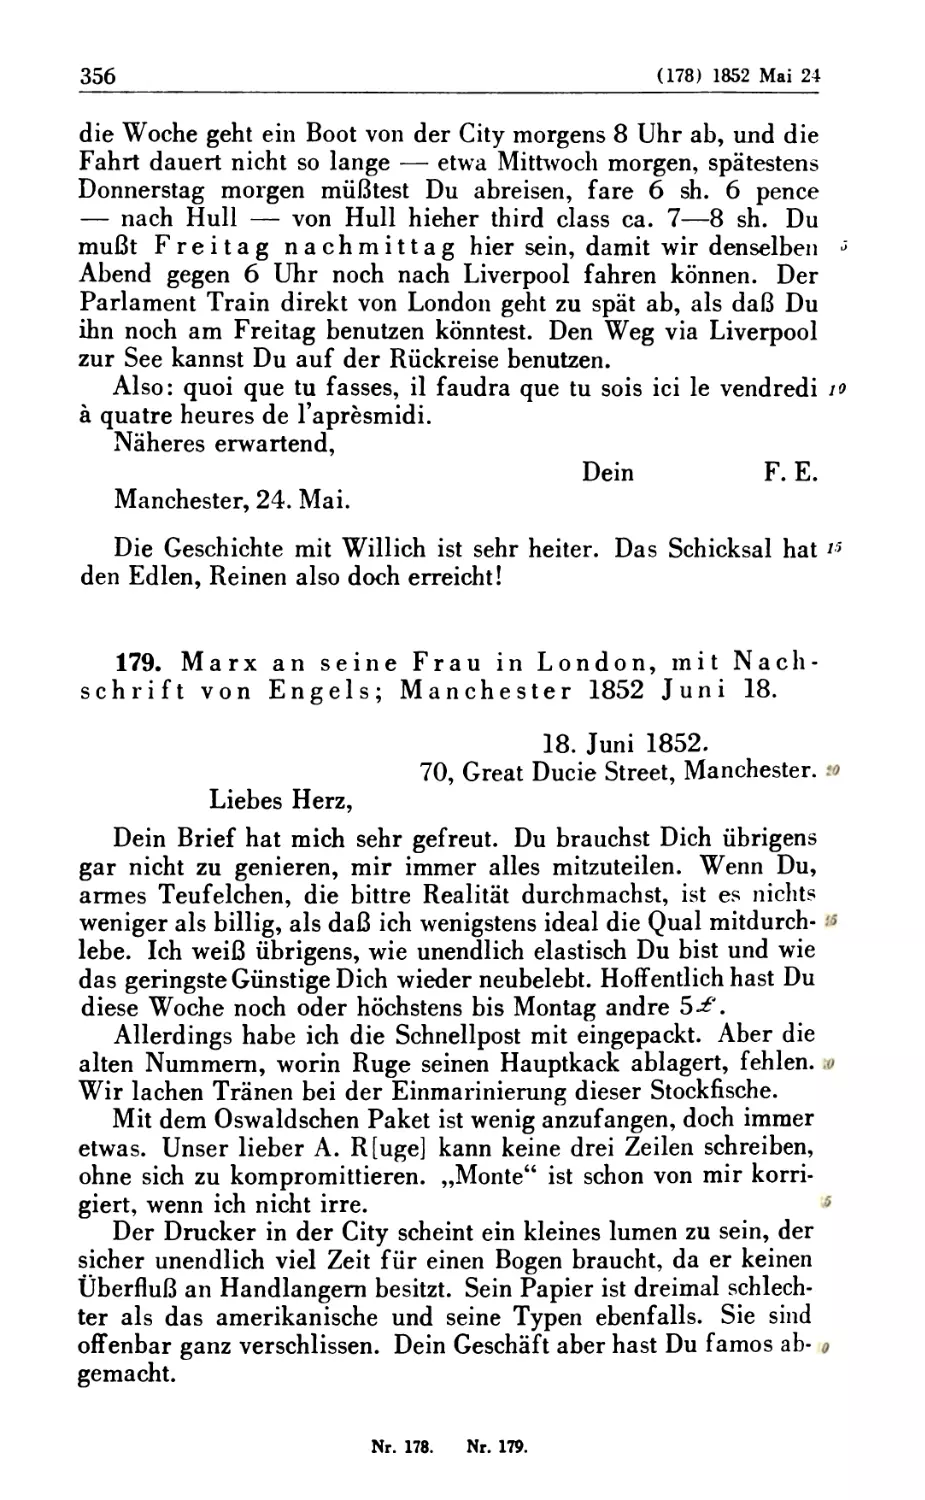 179. Marx an seine Frau in London, mit Nachschrift von Engels; Manchester 1852 Juni 18